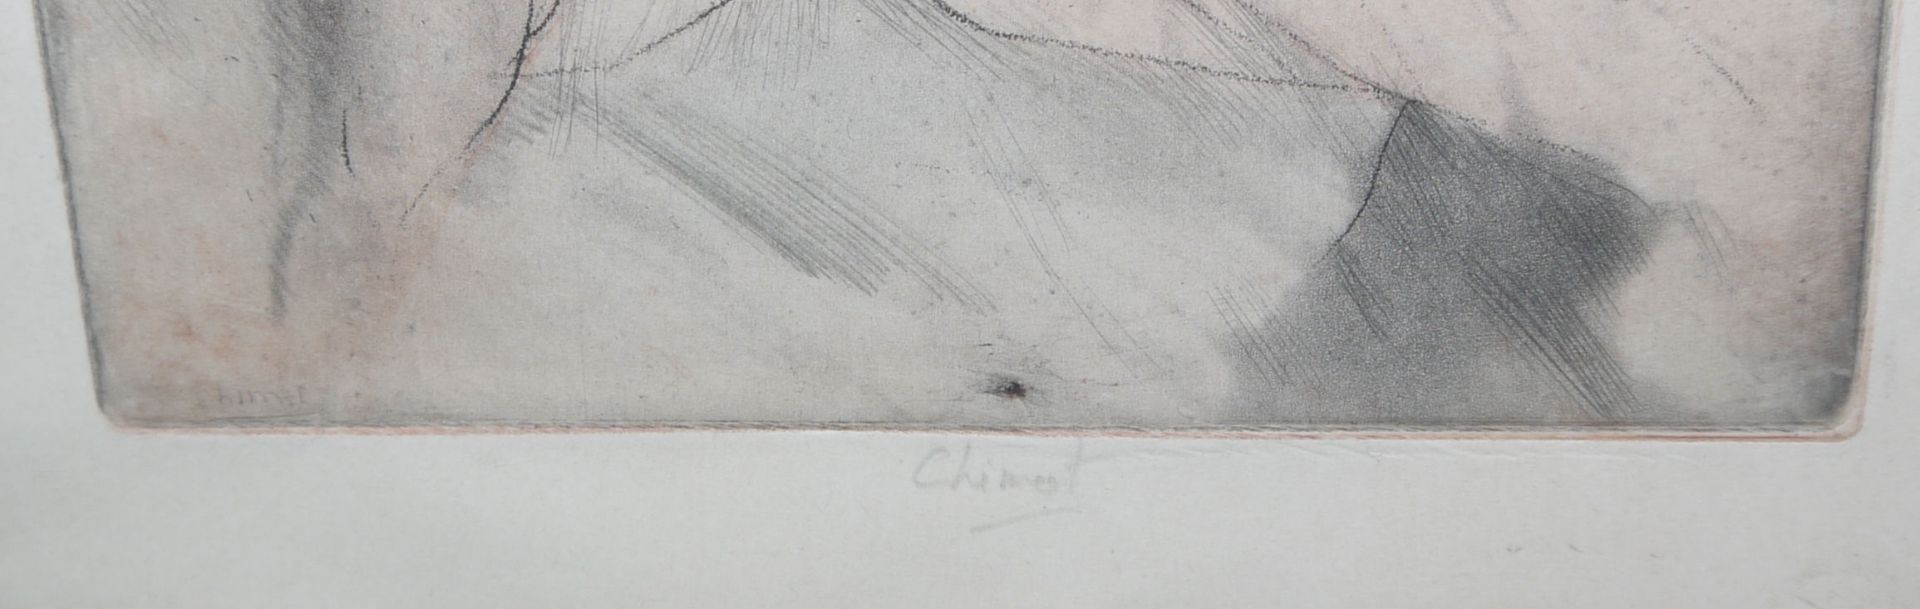 Édouard Jules Chimot, Spätsymbolistische Akte, 3 signierte Farbradierungen, gerahmt - Bild 6 aus 6